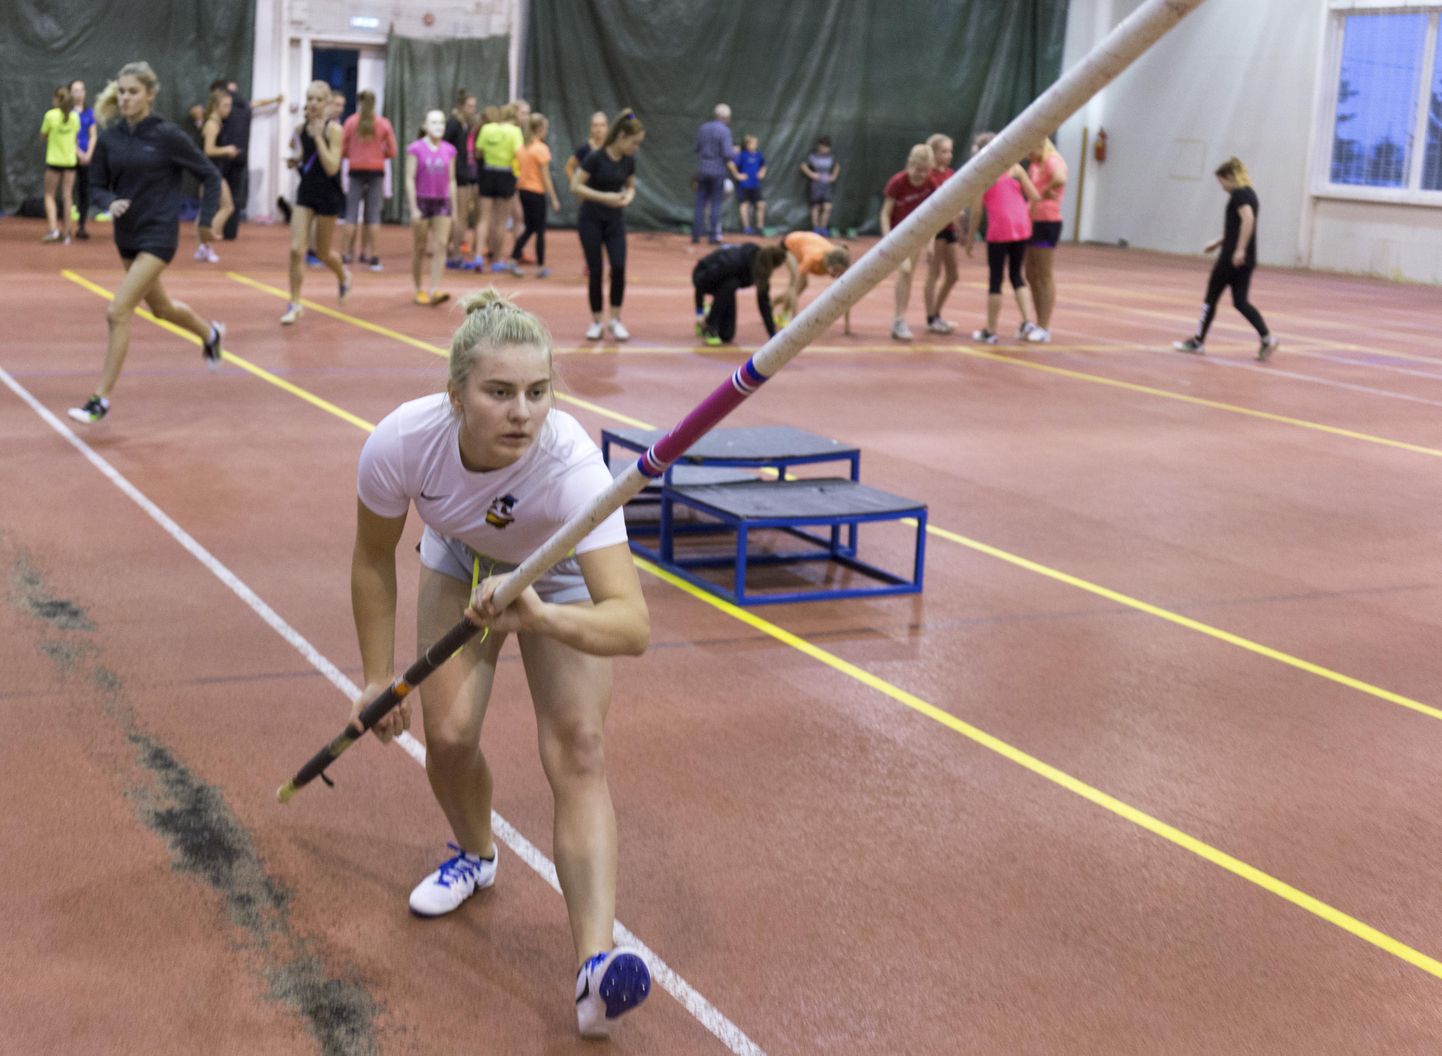 Emilia Palgi tuli teivashüppemeistriks tulemusega, mis tähistab Viljandimaa alla 18-aastaste tütarlaste rekordit. Pilt on tehtud Viljandi Paalalinna viilhallis.